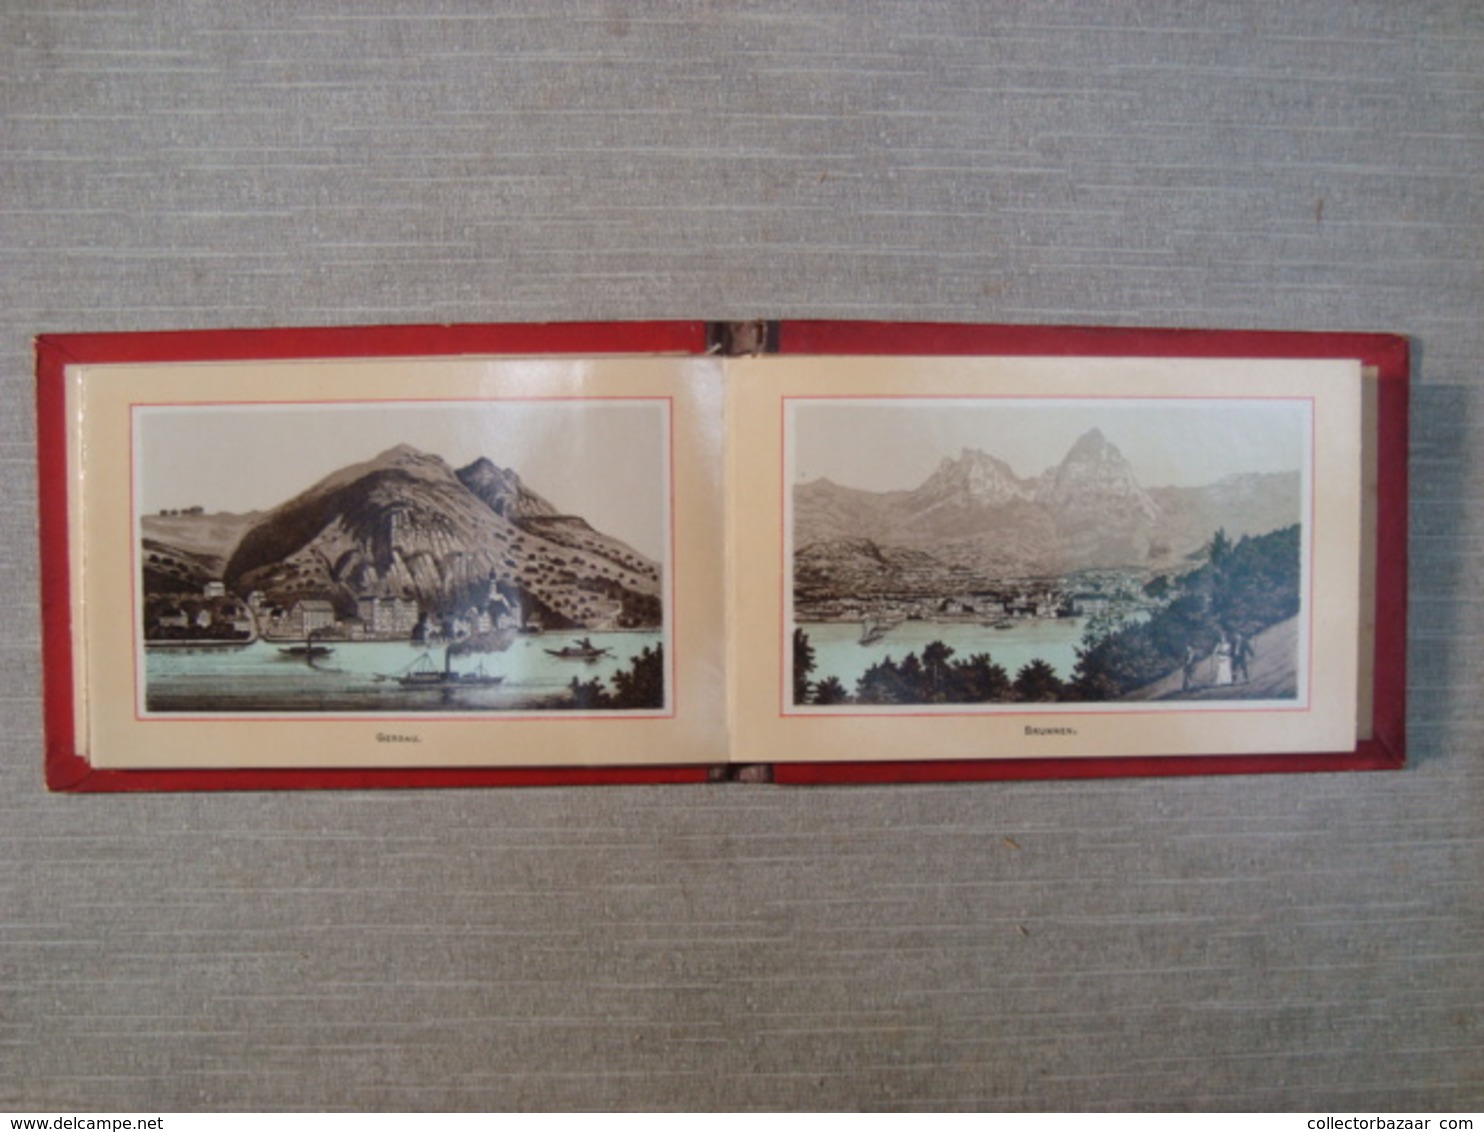 Album souvenir printed photographies ca1890 Righi Librairie C.F. Prell, Succ. A. Prell Lucerne Railway Train